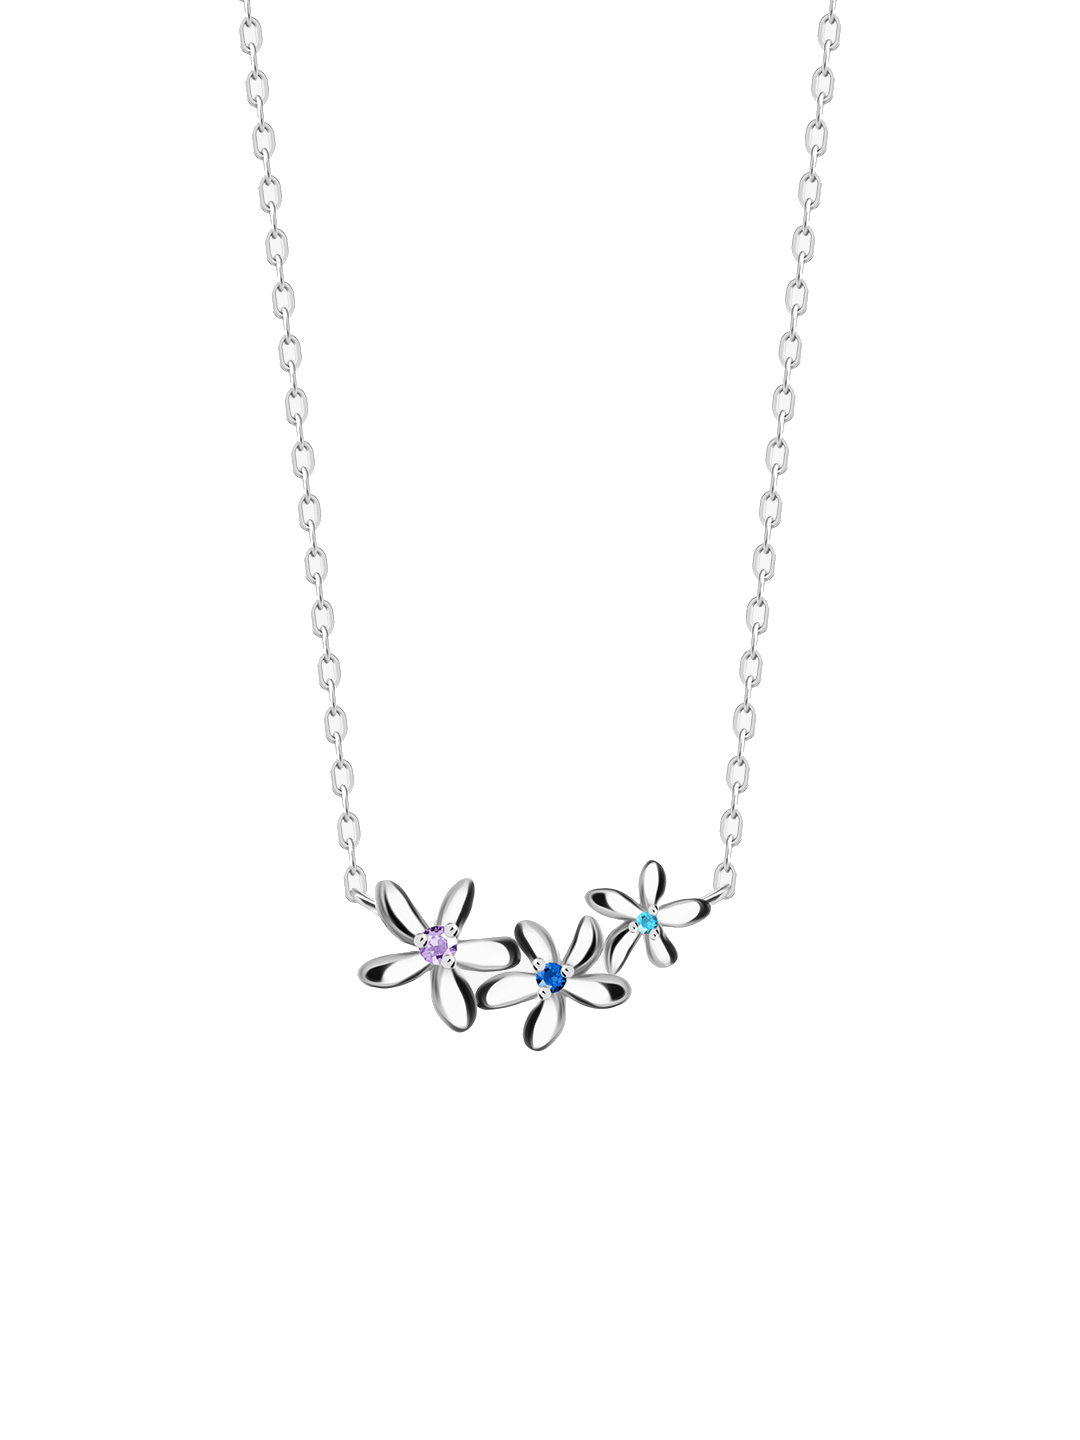 Preciosa Něžný stříbrný náhrdelník Fresh s kubickou zirkonií Preciosa 5344 70